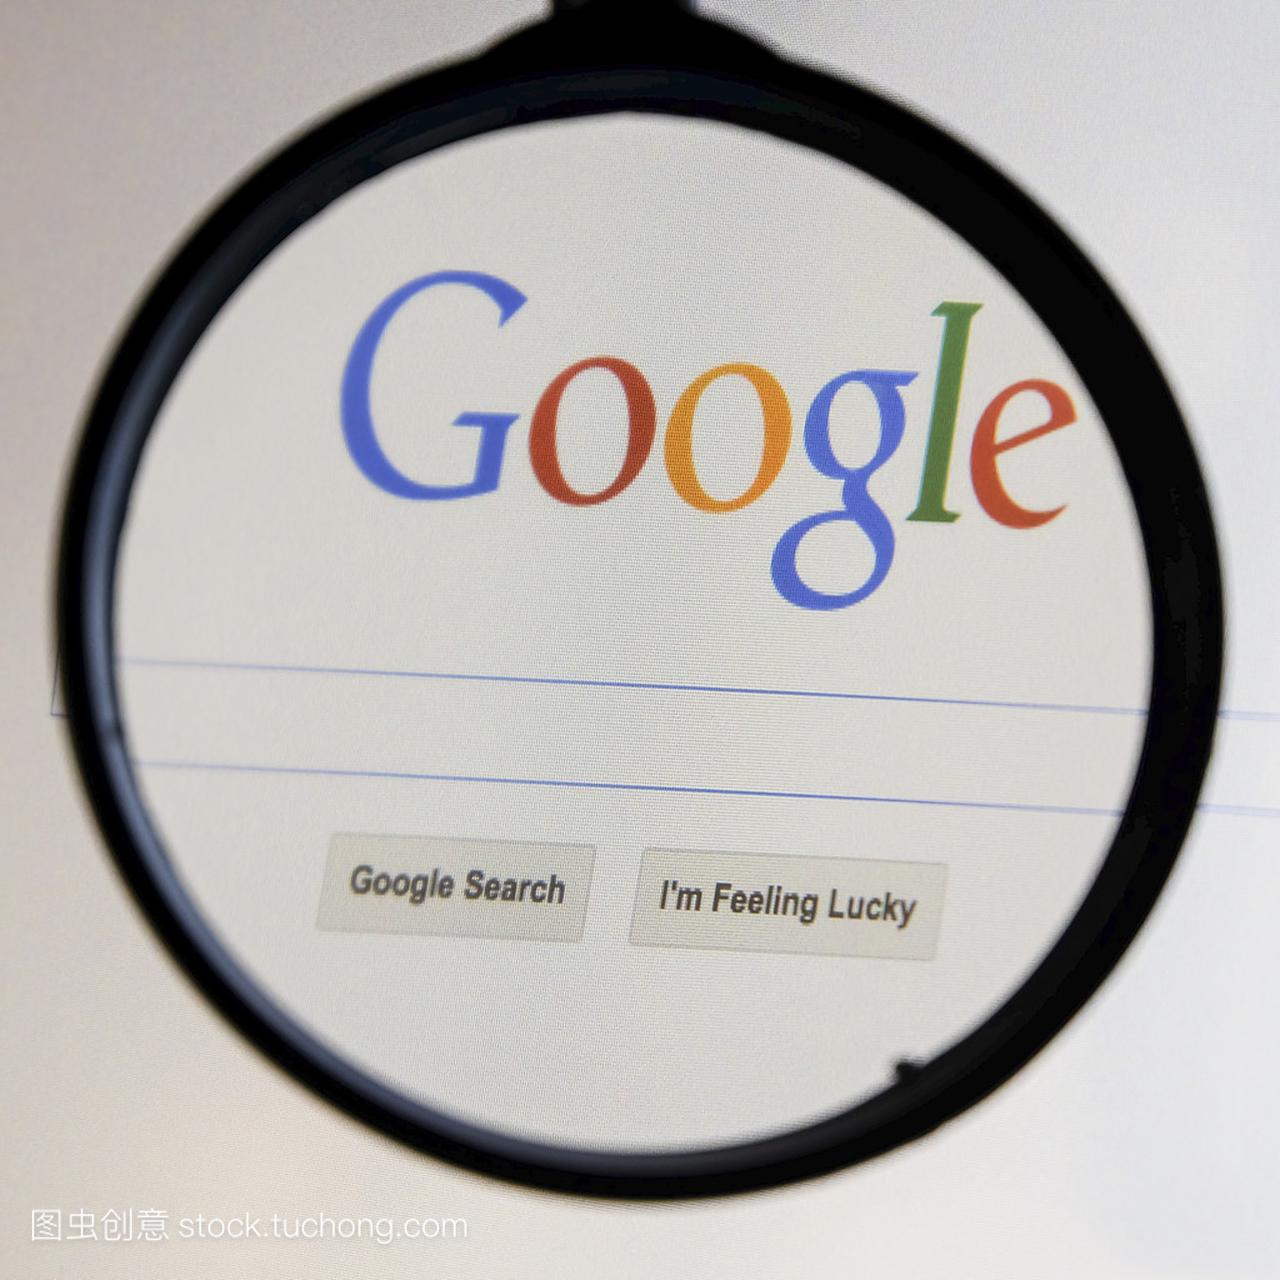 谷歌搜索的泰国-2014 年 9 月 2 日: 放大镜